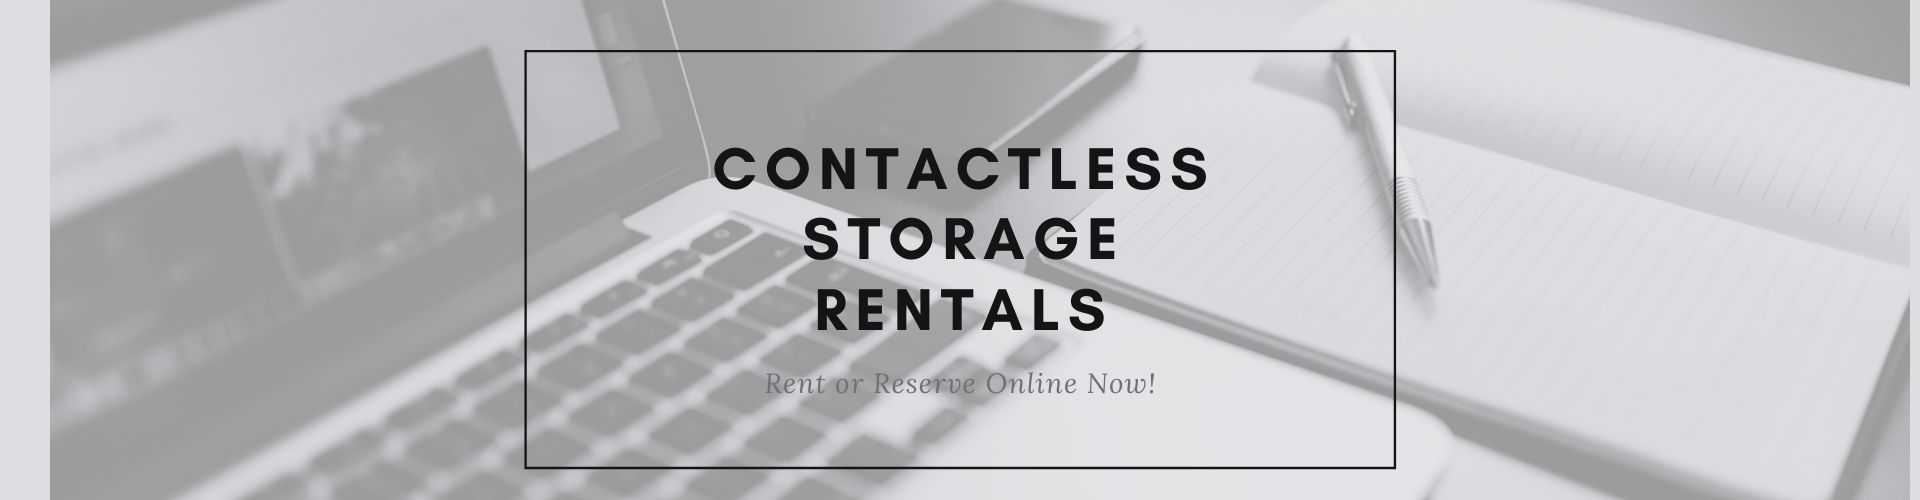 Choosing Contactless Storage Rentals